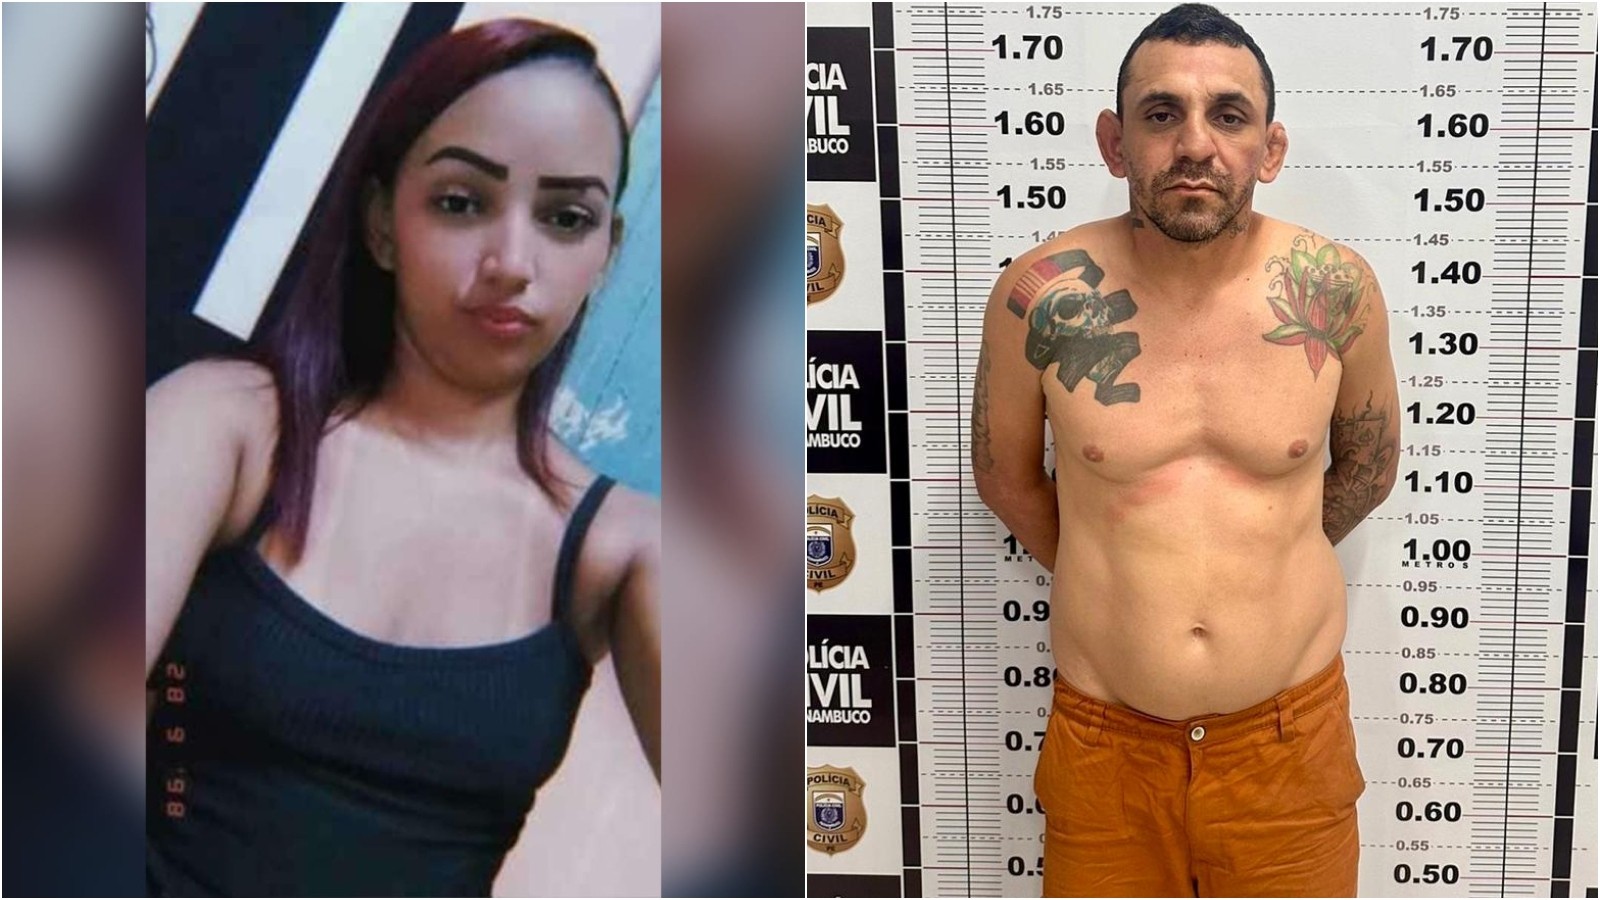 Suspeito de matar namorada grávida e esconder corpo sob cama no Ceará é preso em Pernambuco